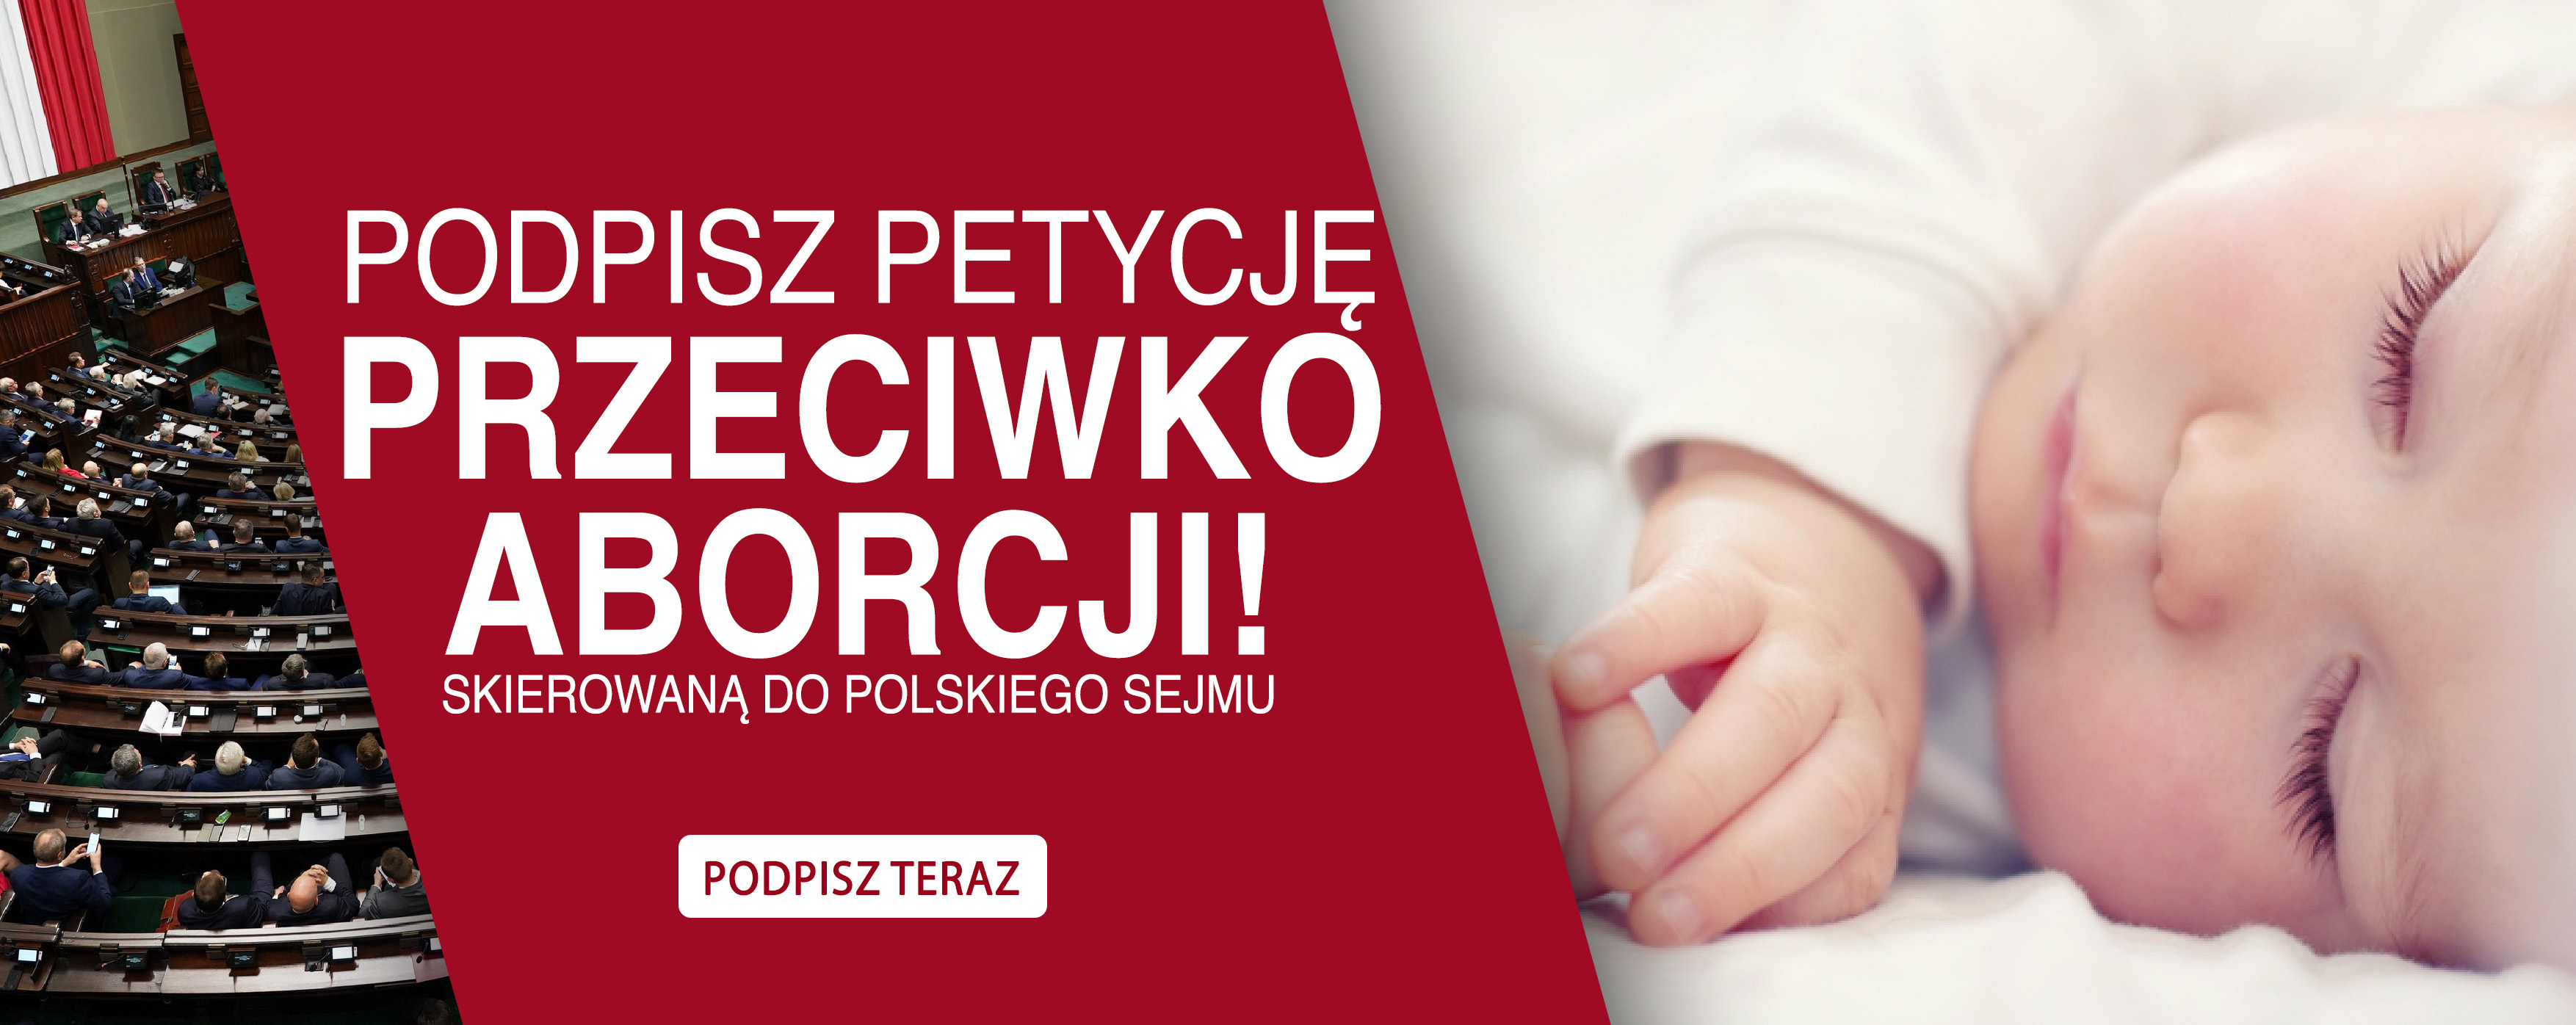 /pl/petycje/nie-morduj-niewiniatek-podpisz-petycje-przeciwko-aborcji